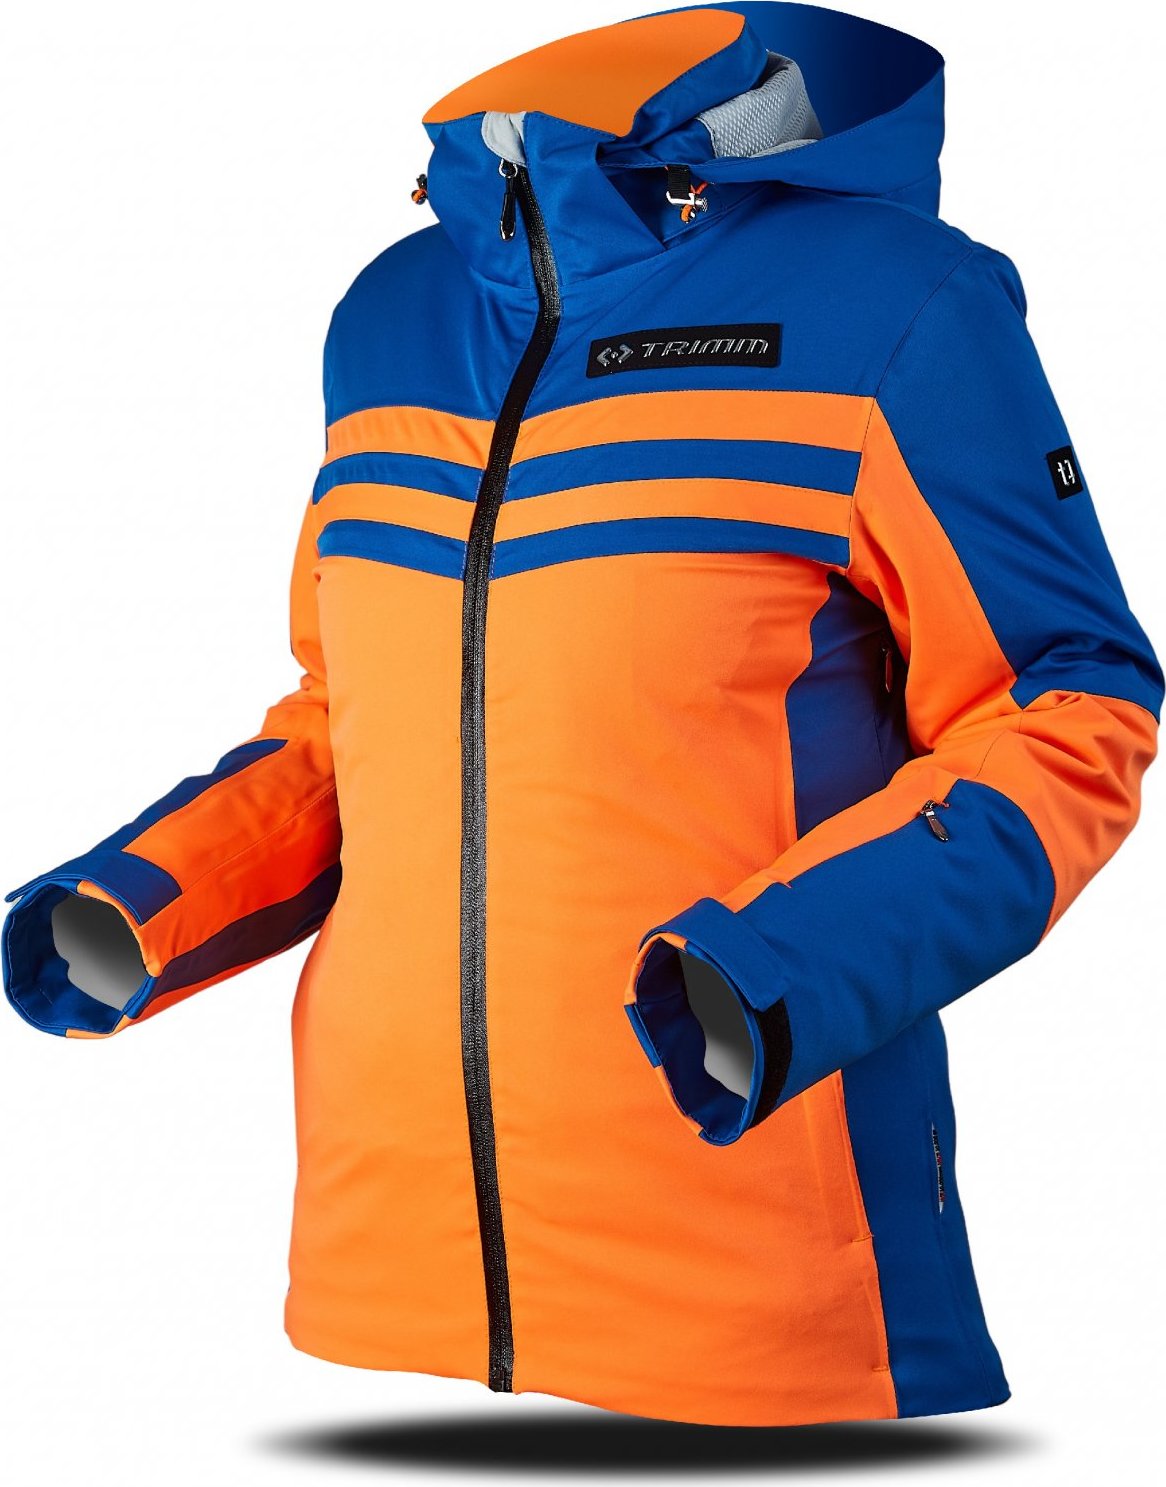 Dámská lyžařská bunda TRIMM Ilusion oranžová/modrá Velikost: XS, Barva: signal orange/jeans blue